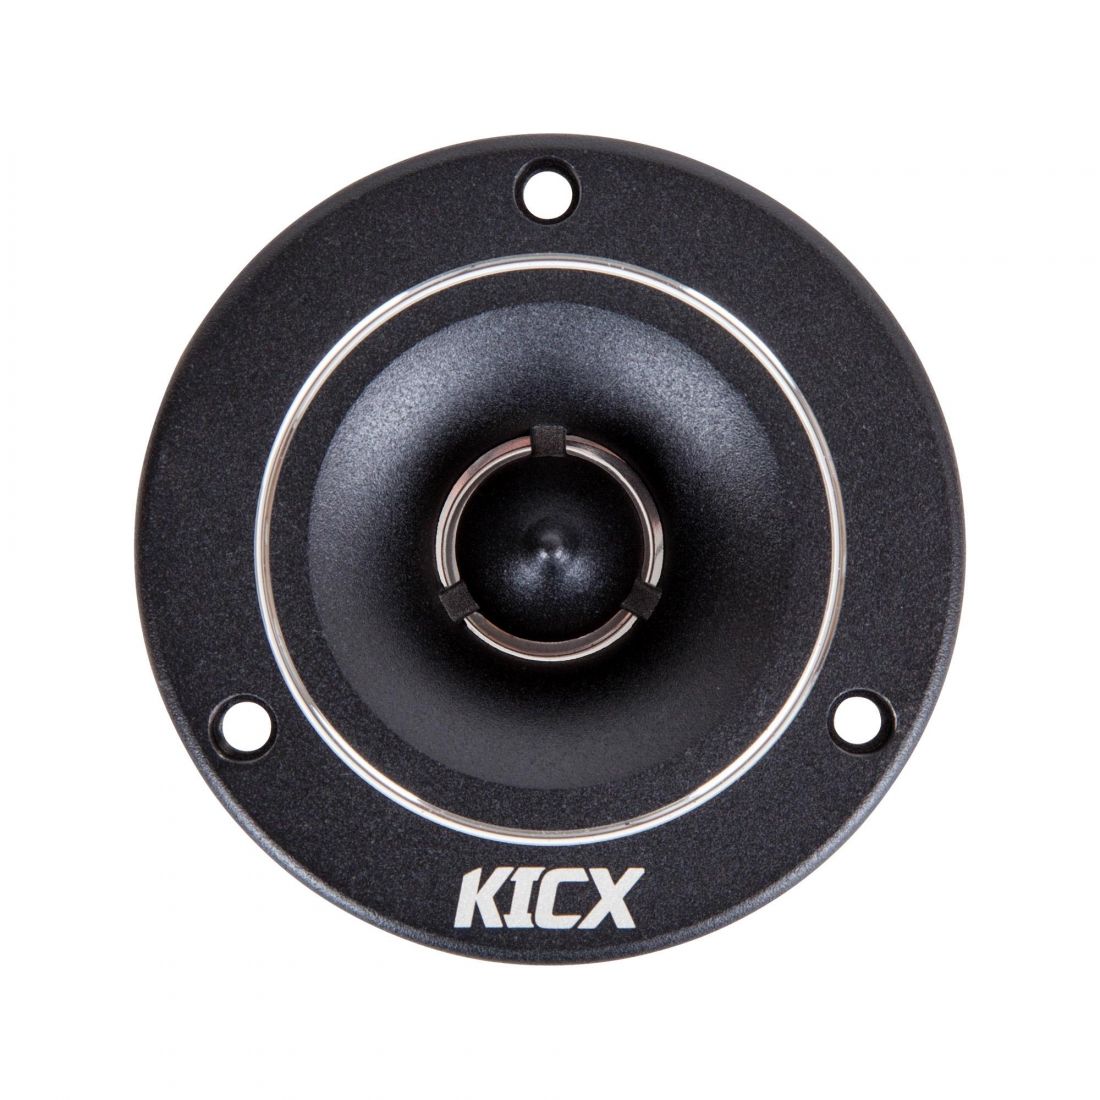 KICX DTC 36 V2